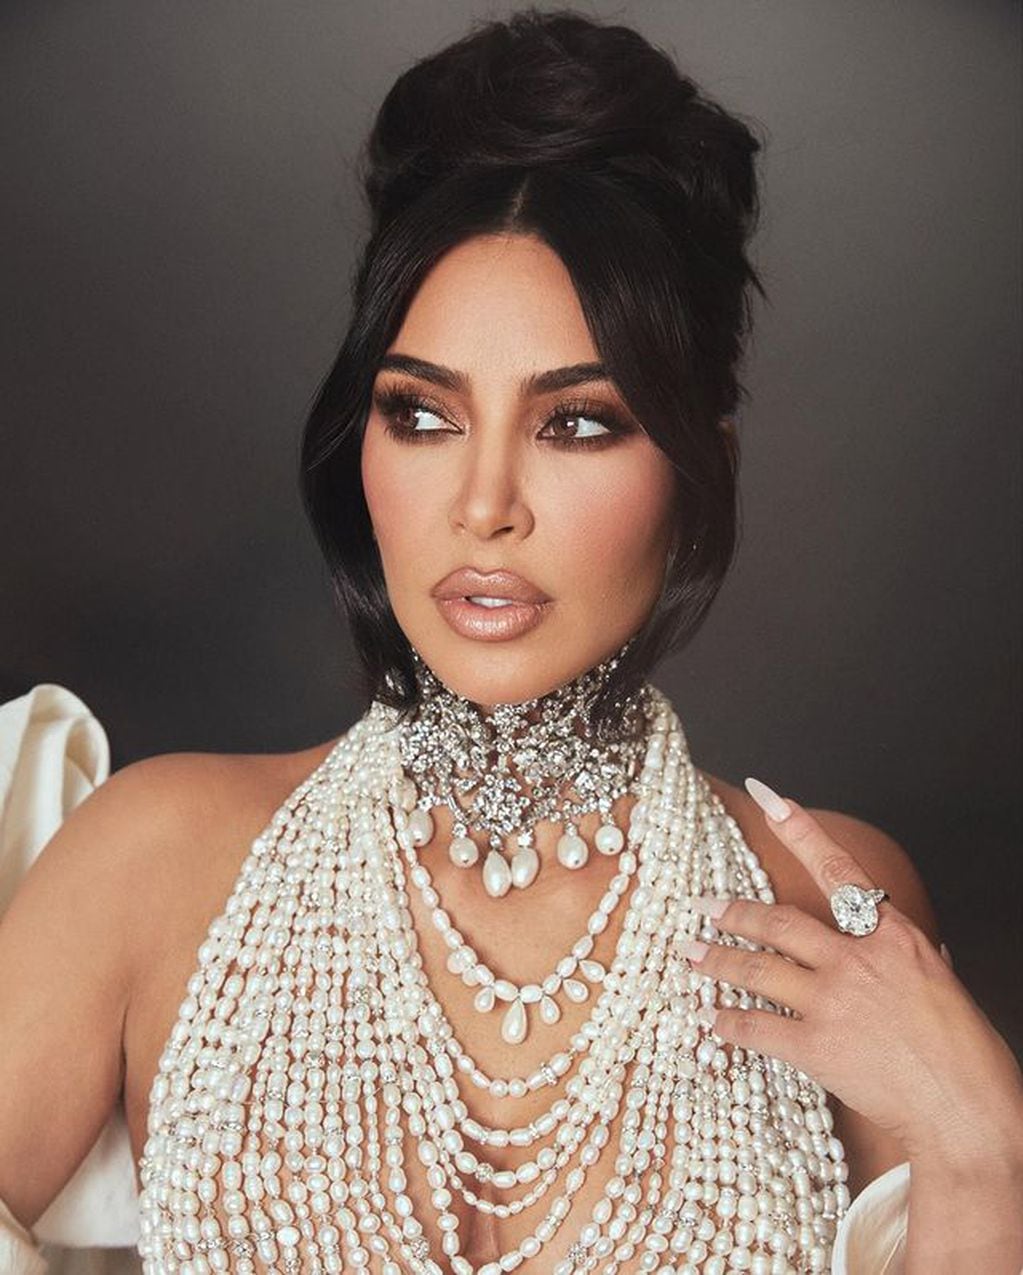 La empresaria sorprendió con su excéntrico look repleto de perlas para la Met gala 2023 / Foto: Instagram